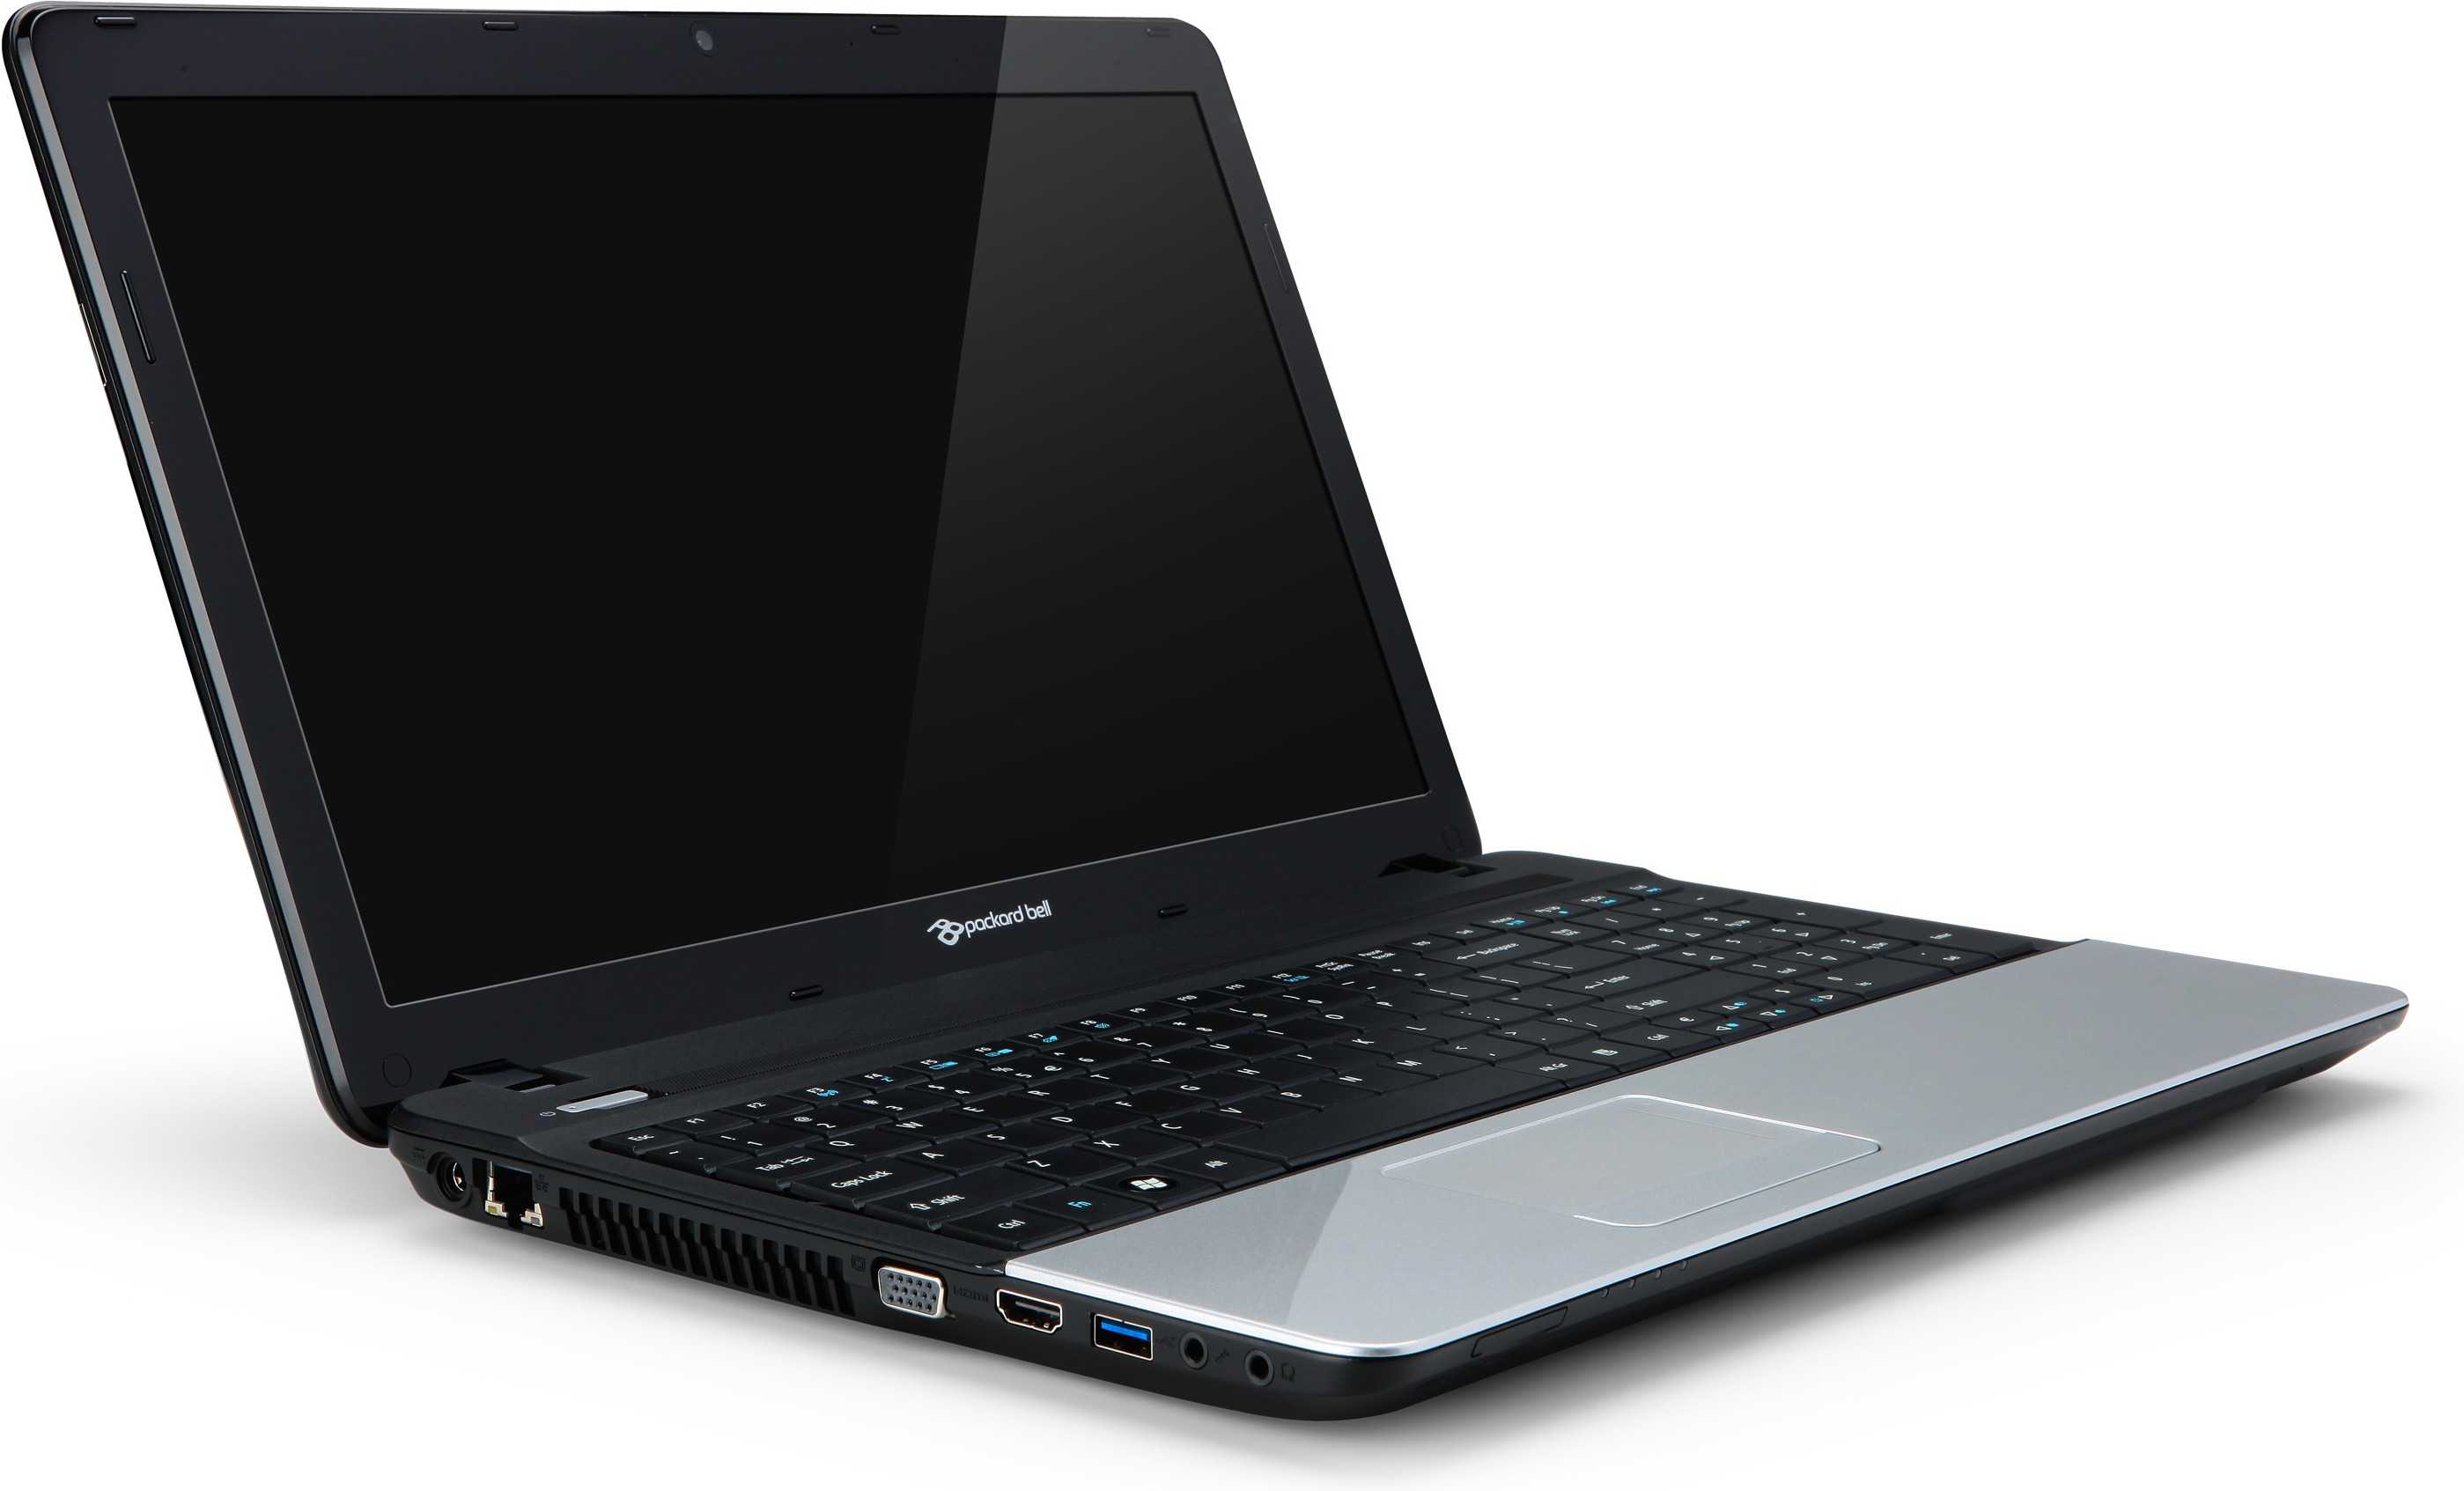 Ноутбук acer aspire e1 571g-33114g50mnks — купить, цена и характеристики, отзывы